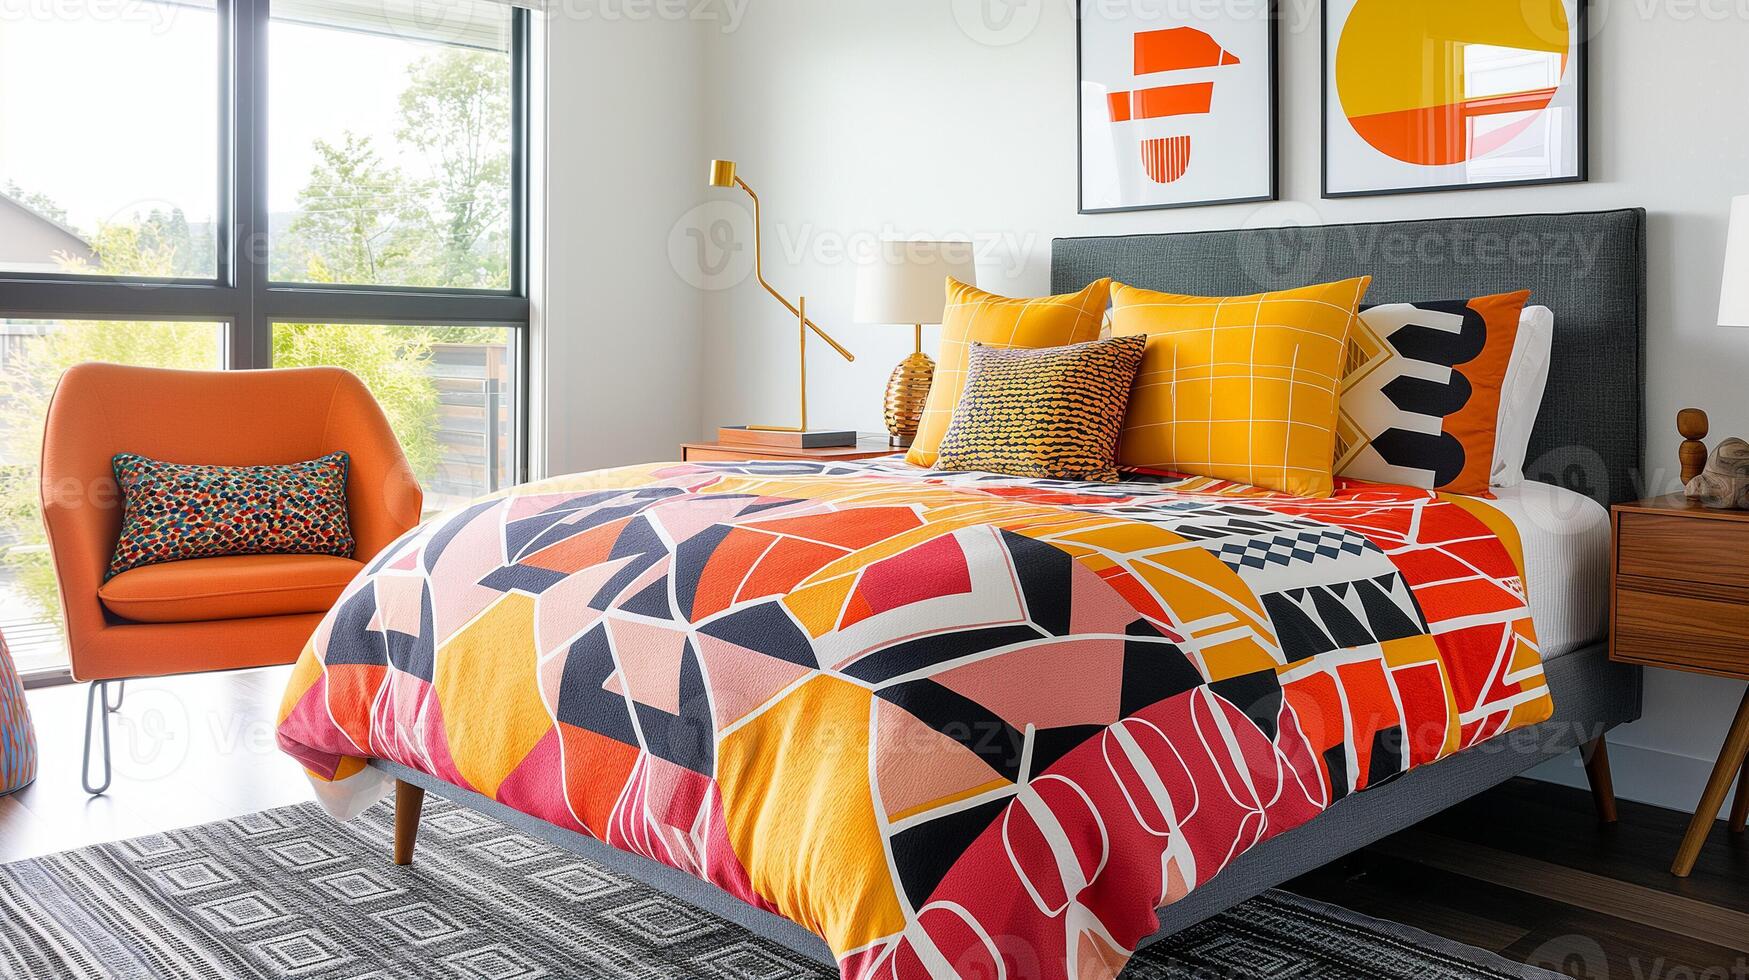 luminosa moderno Camera da letto interno con colorato geometrico biancheria da letto, arancia poltrona, e contemporaneo arte, incarnando di moda casa arredamento e primavera ricaricare concetti foto